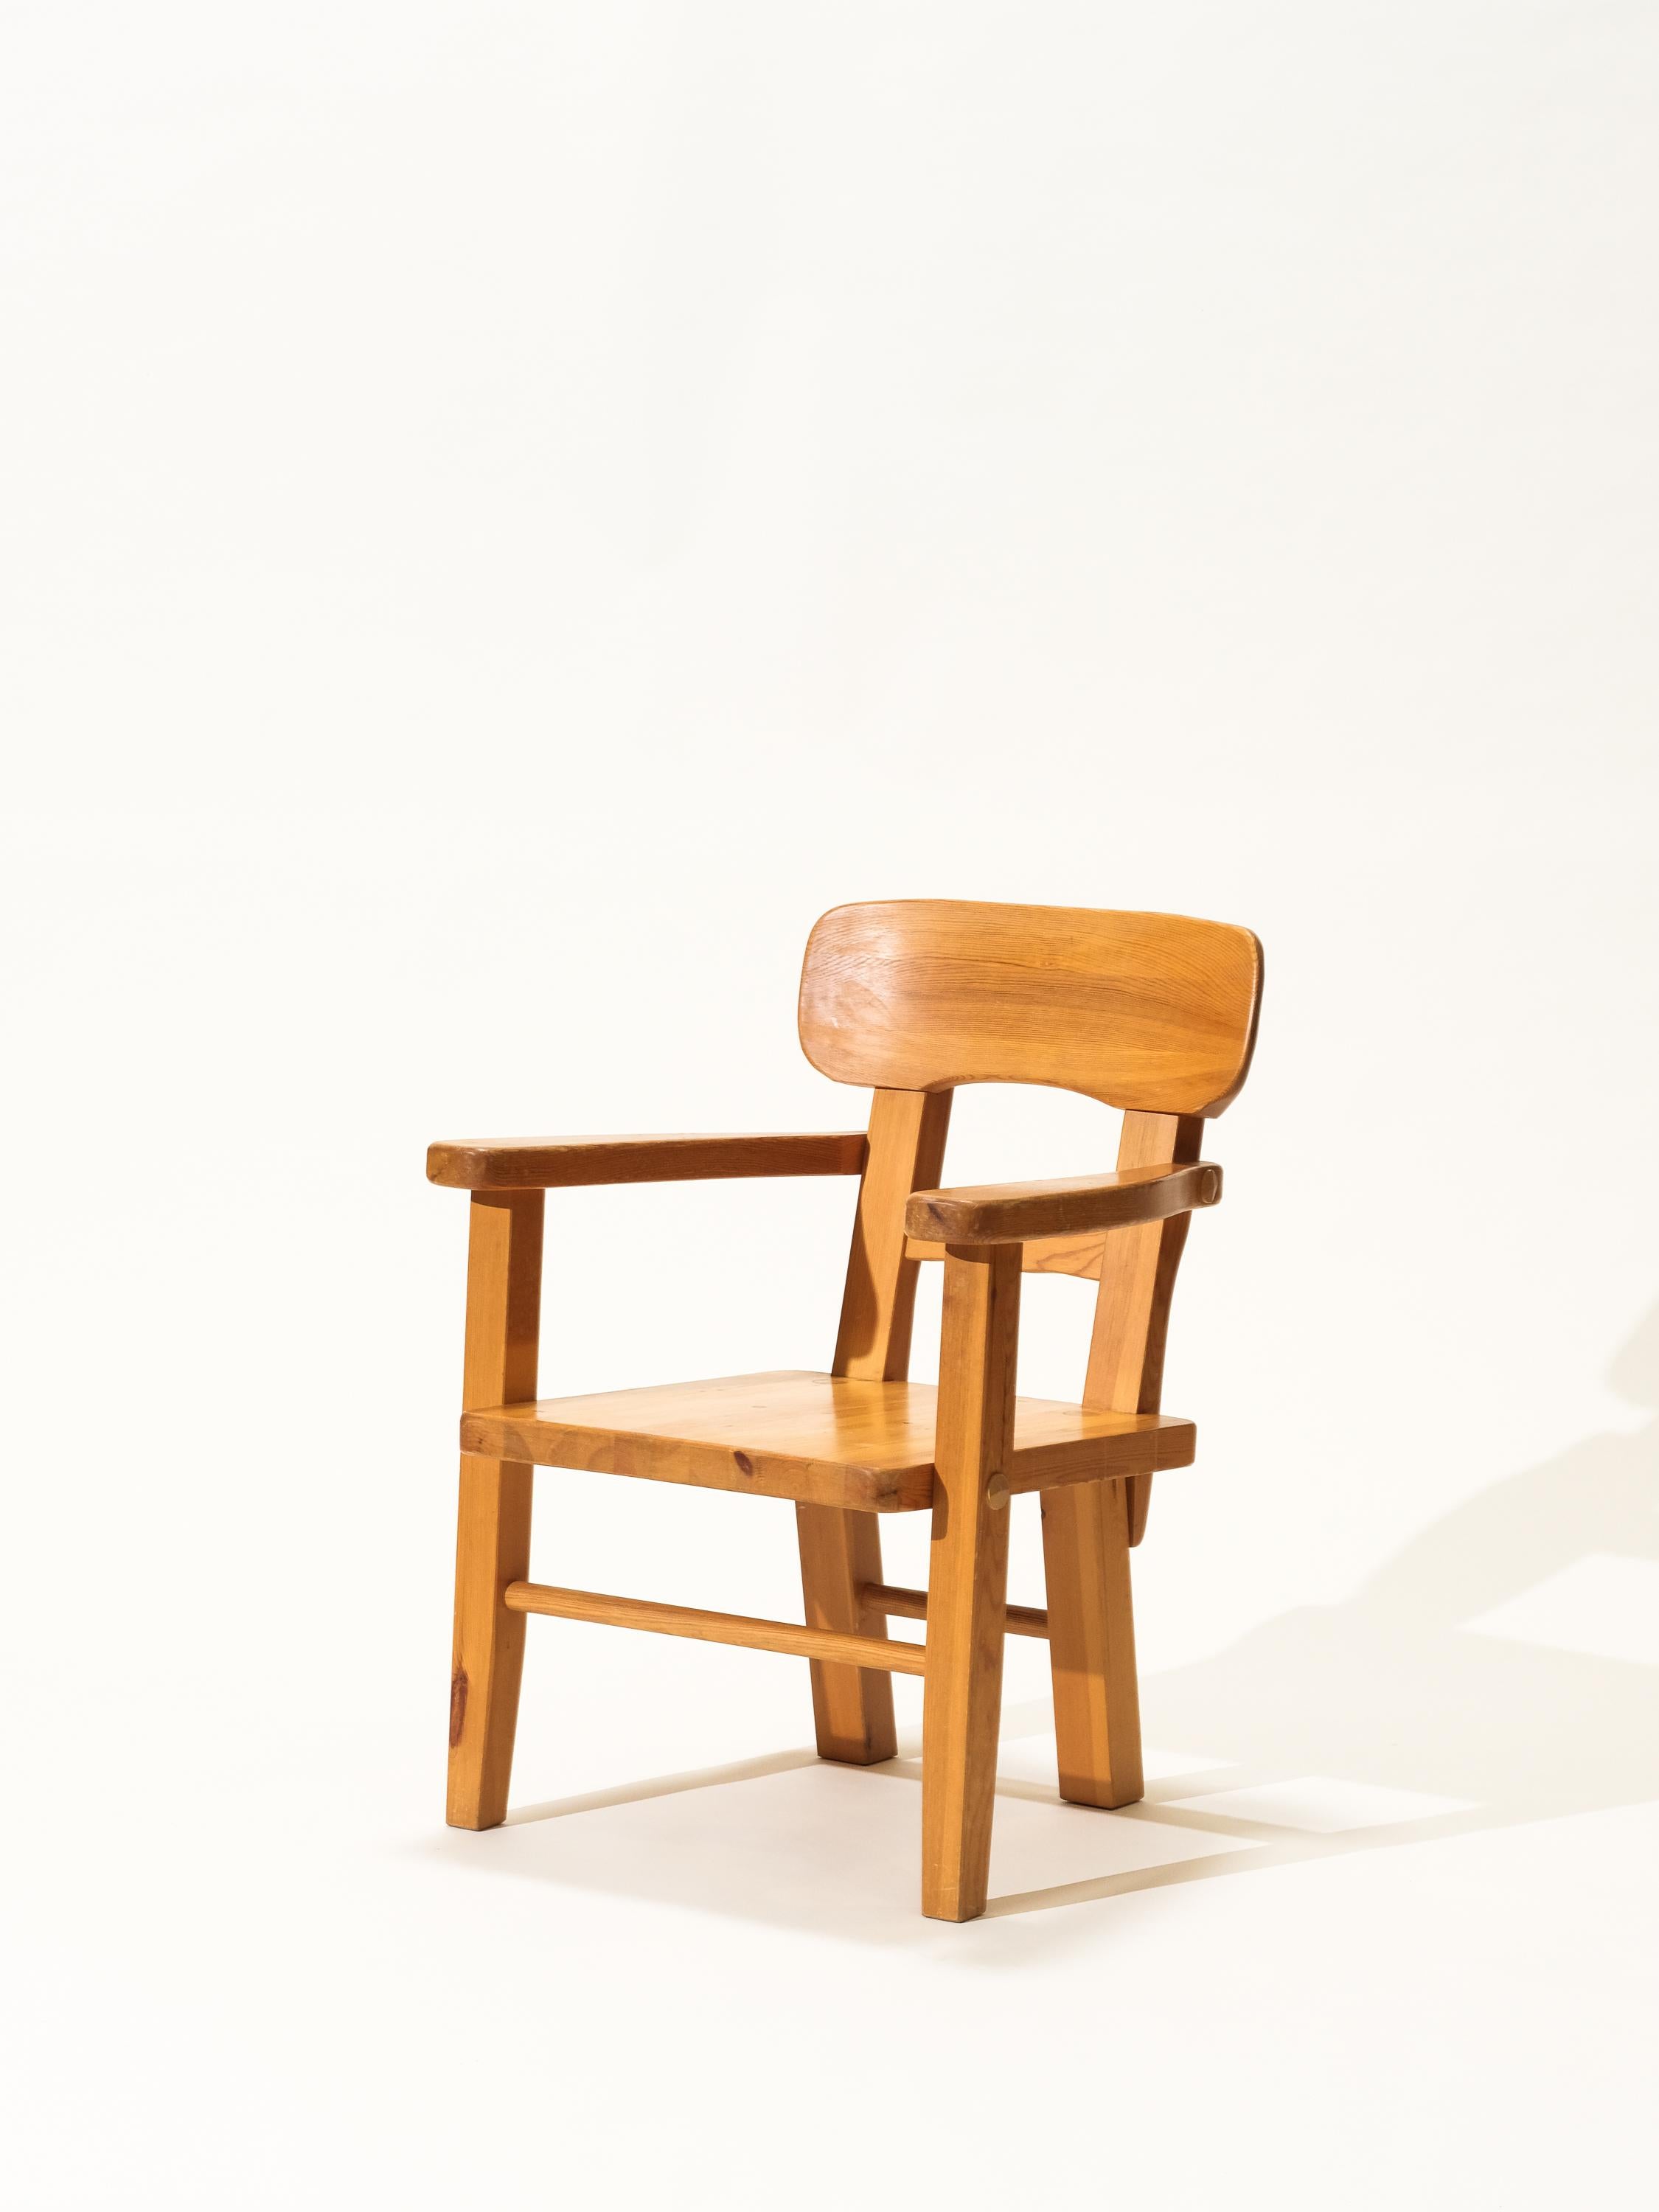 Rare fauteuil suédois en pin massif produit par Vemdalia dans les années 1970. En bonne condition vintage et originale avec de petits signes d'âge et d'utilisation.
Estampillé.